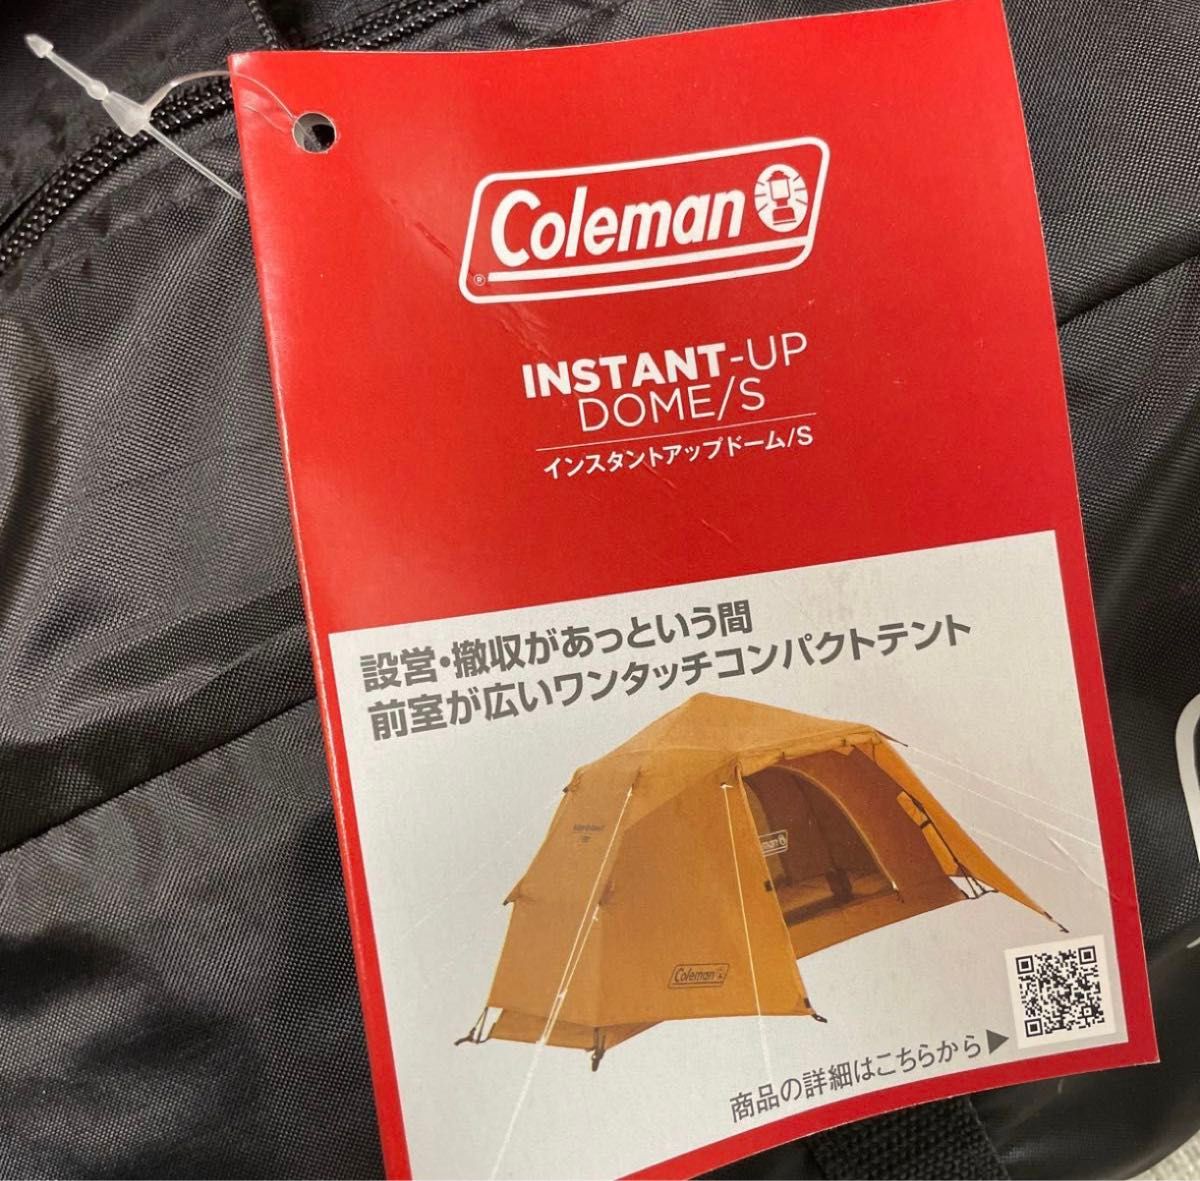 【新品未使用】Coleman(コールマン)インスタントアップドーム/S 